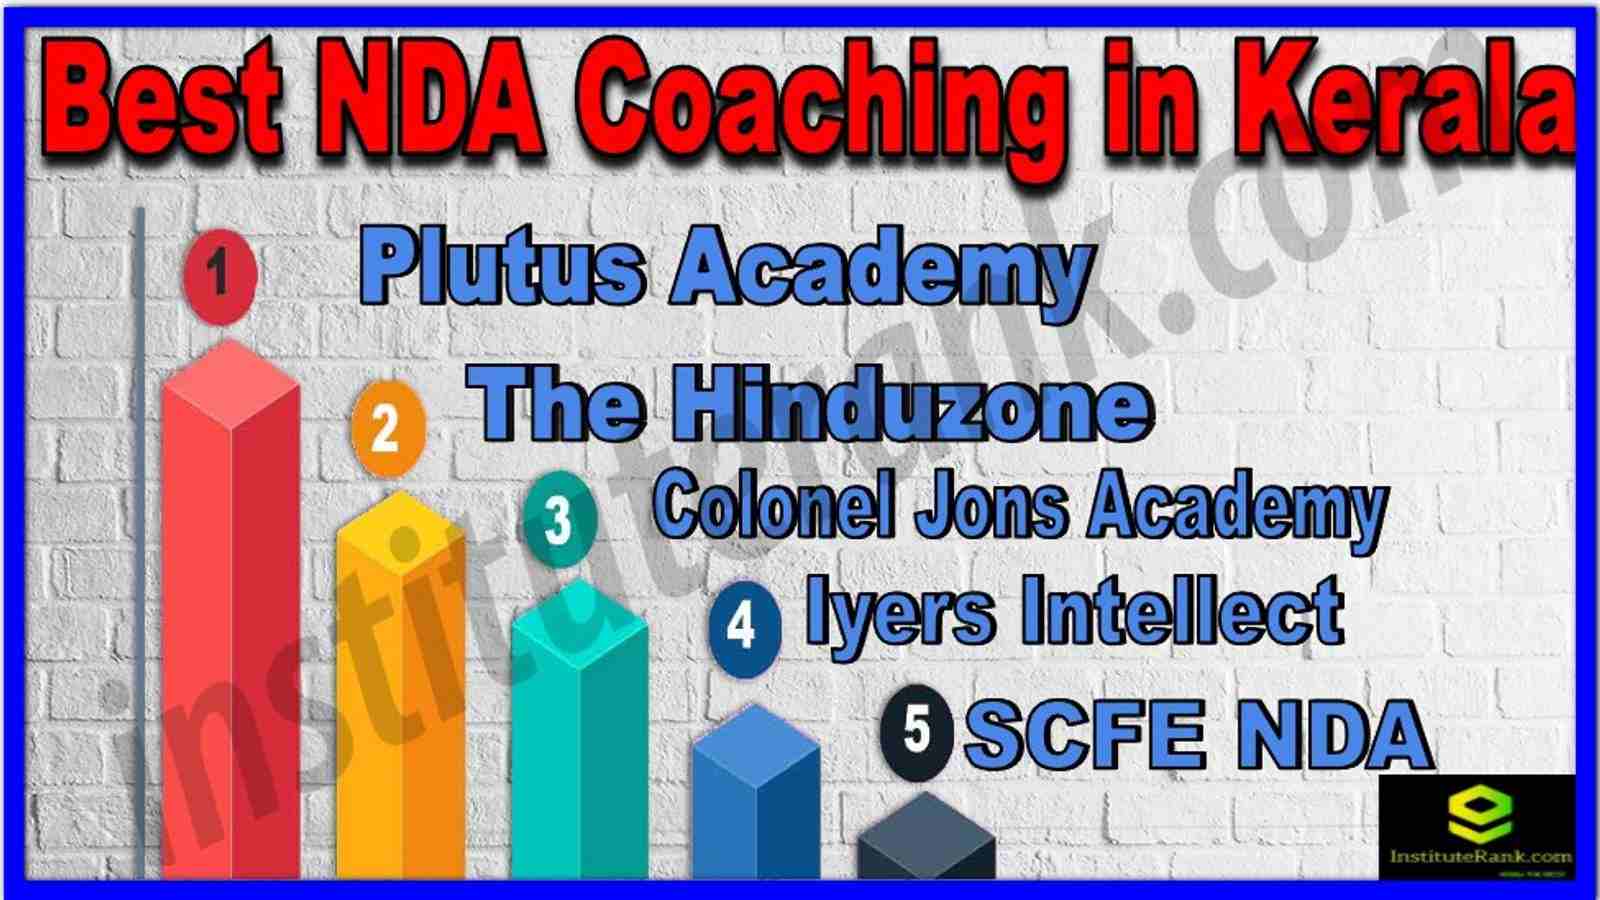 Best NDA Coaching in Kerala